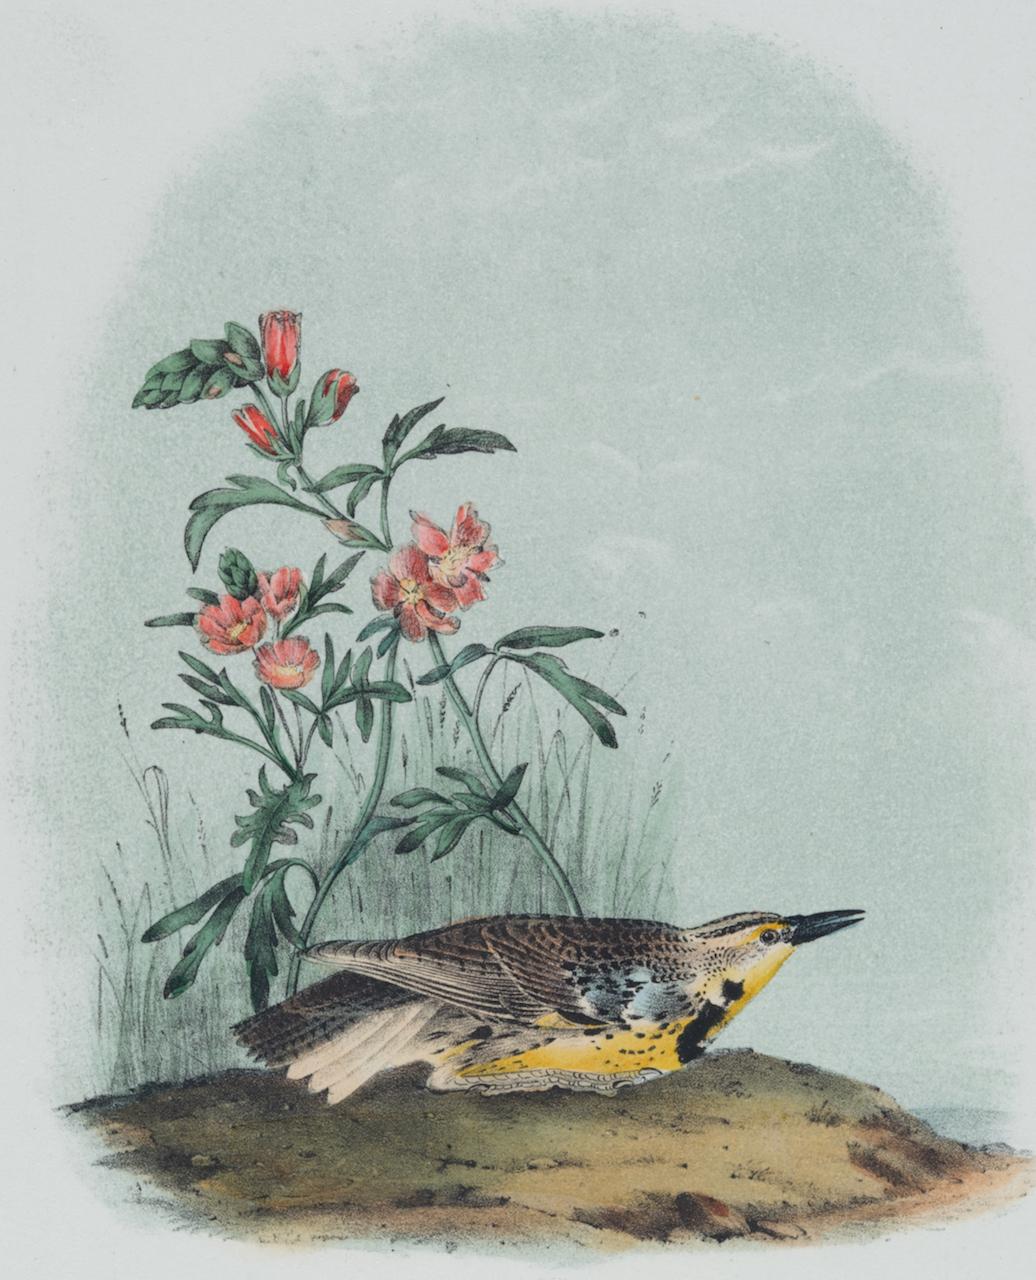 Lark Missouri Meadow Lark : une lithographie originale d'oiseau Audubon du 19e siècle colorée à la main  - Print de John James Audubon